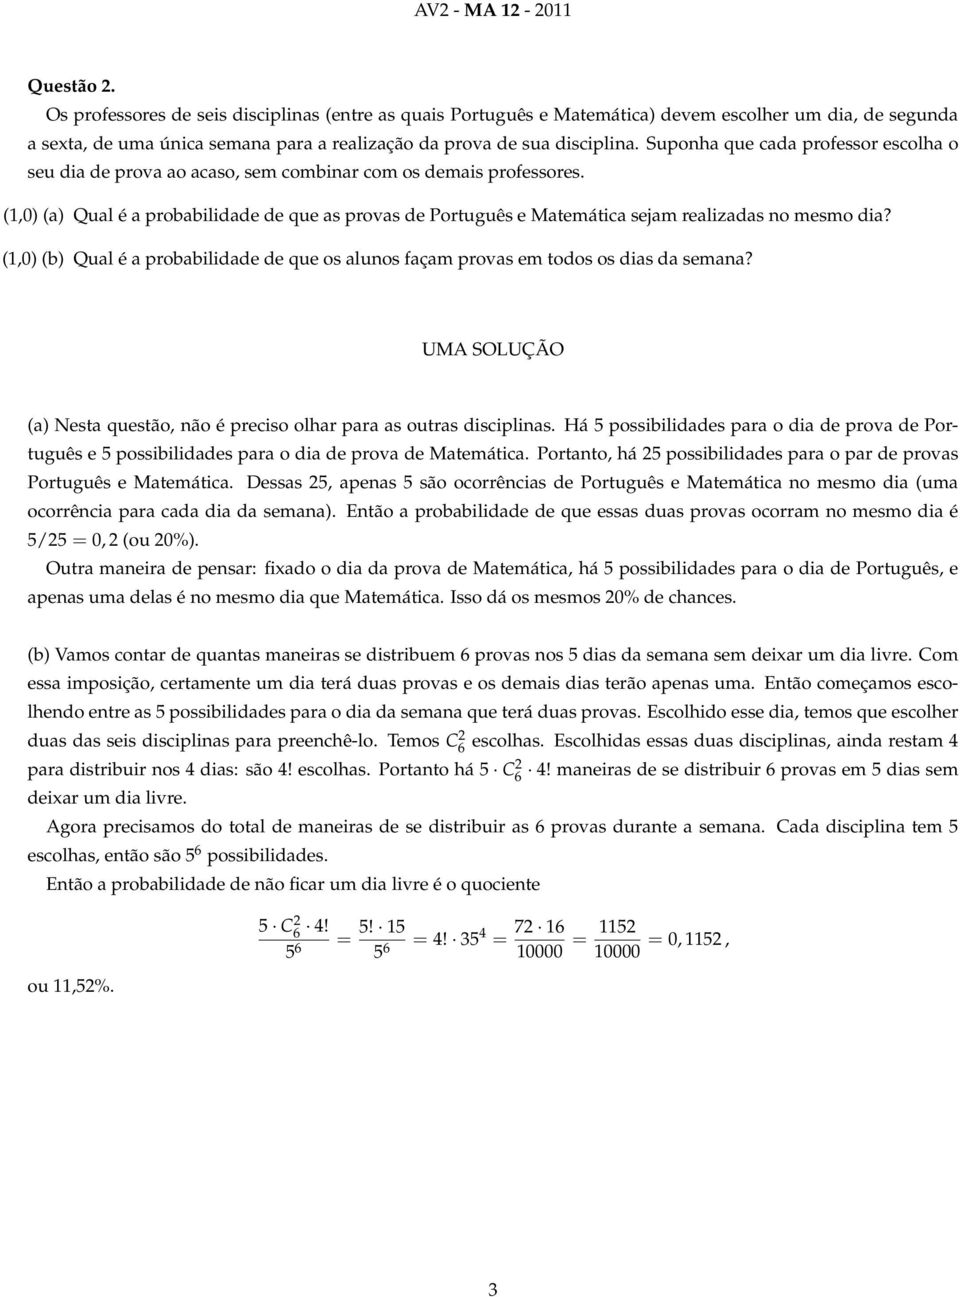 (1,0) (a) Qual é a probabilidade de que as provas de Português e Matemática sejam realizadas no mesmo dia? (1,0) (b) Qual é a probabilidade de que os alunos façam provas em todos os dias da semana?